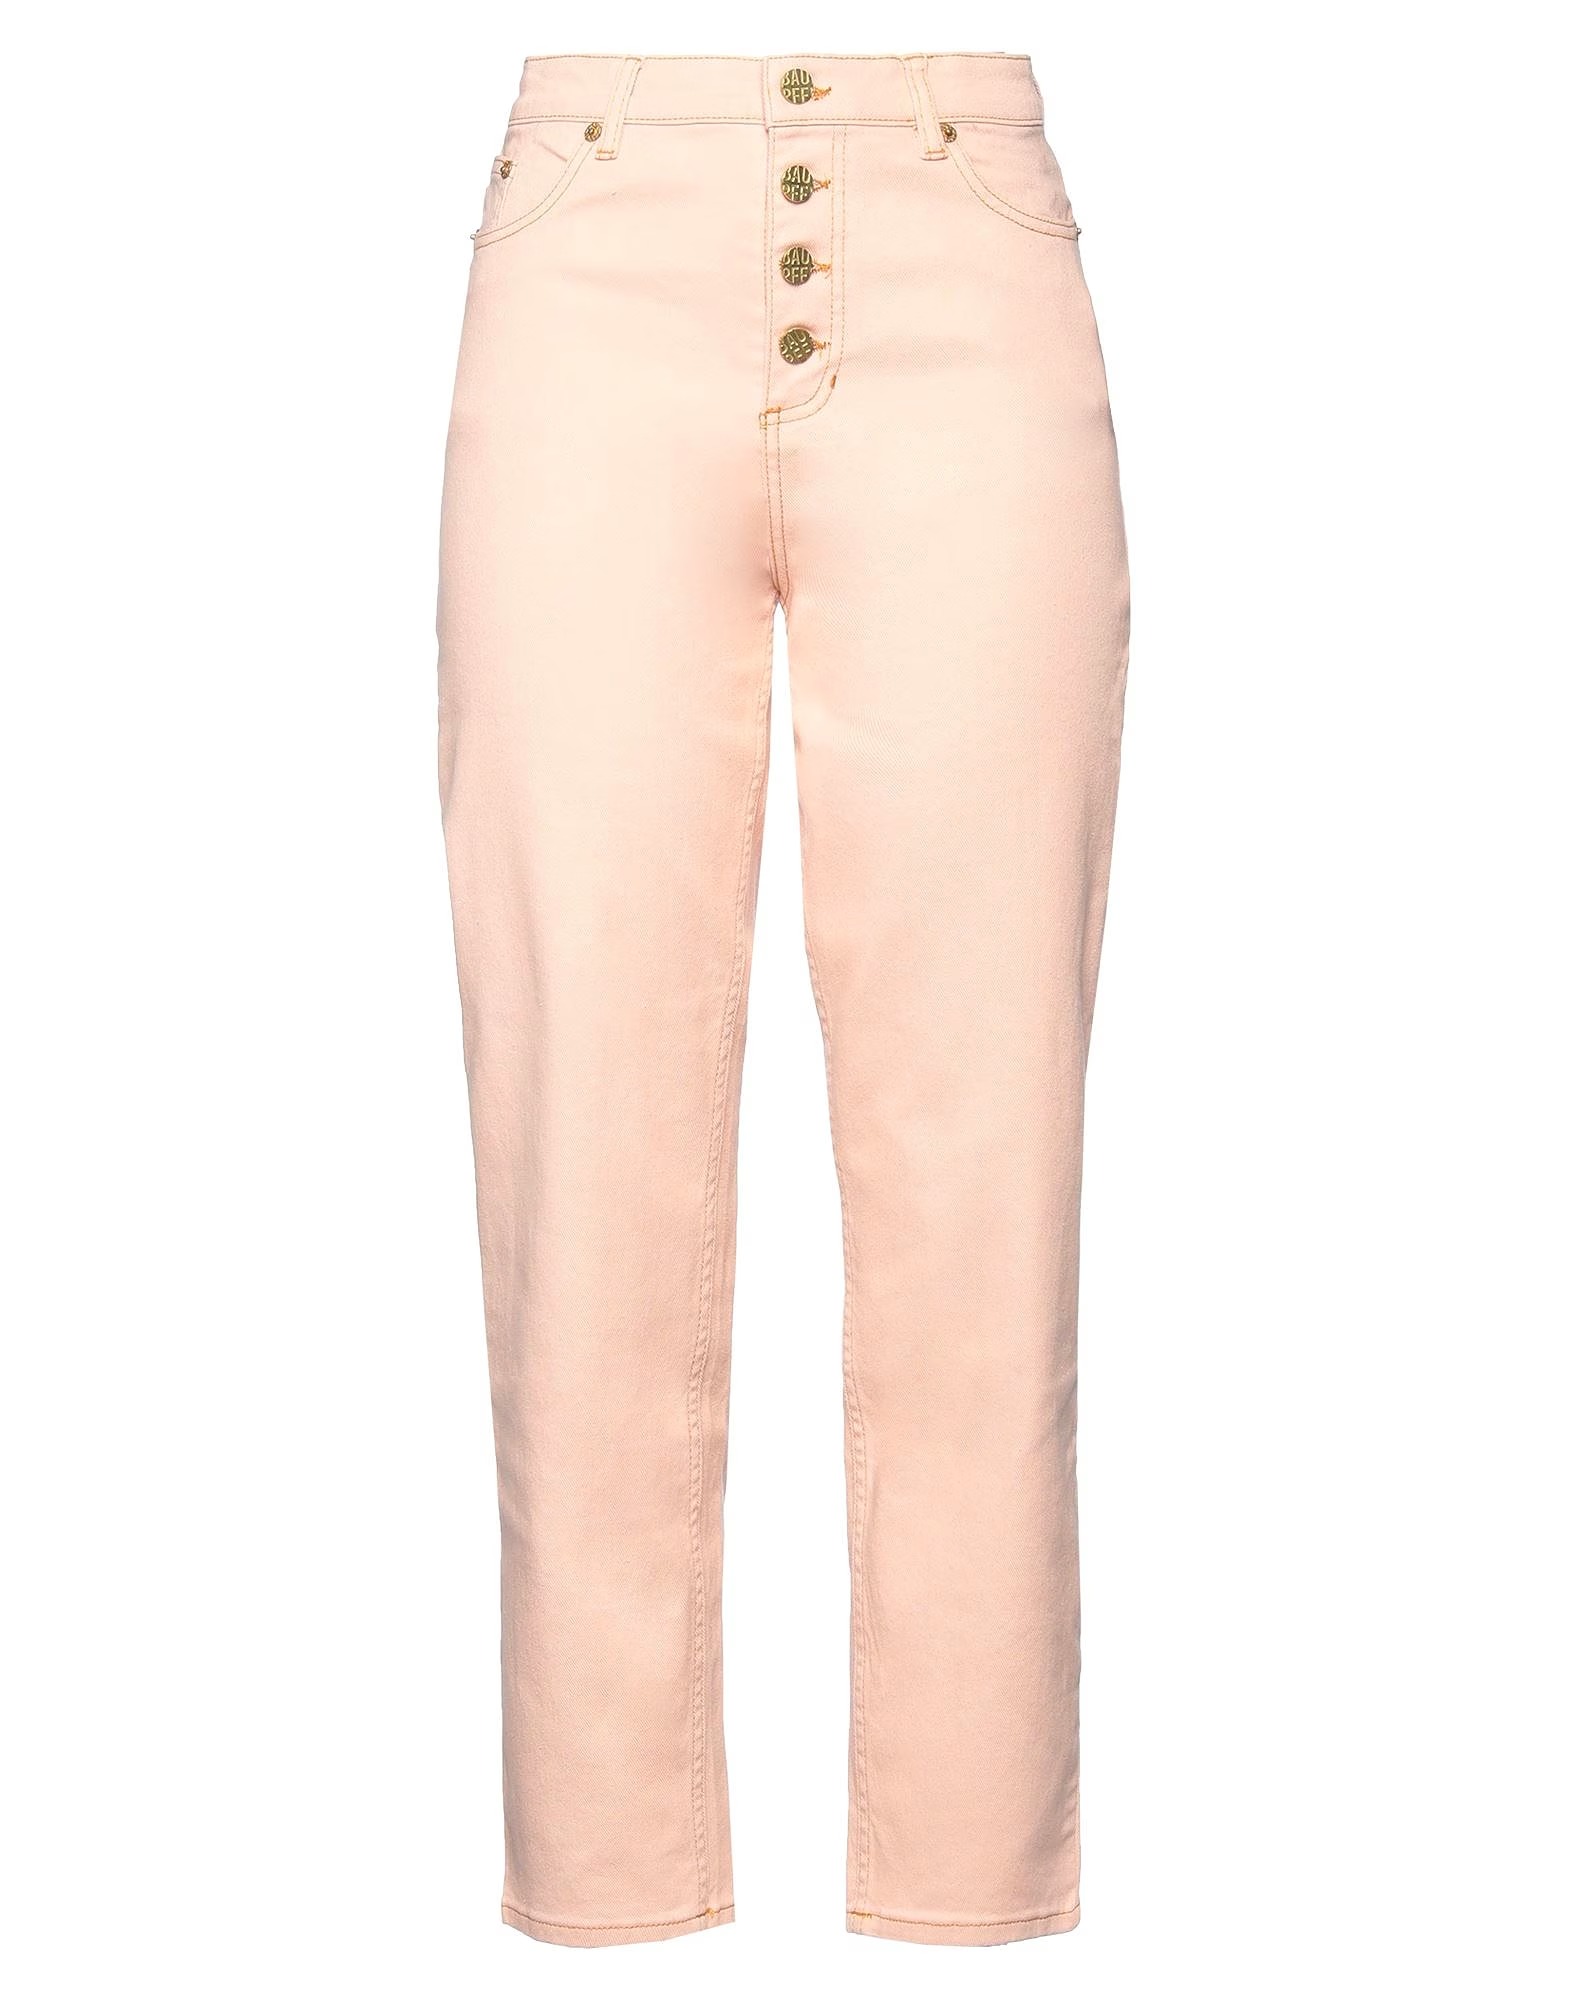 Джинсы Baum Und Pferdgarten Denim Pants, розовый джинсы reserved модные 40 размер